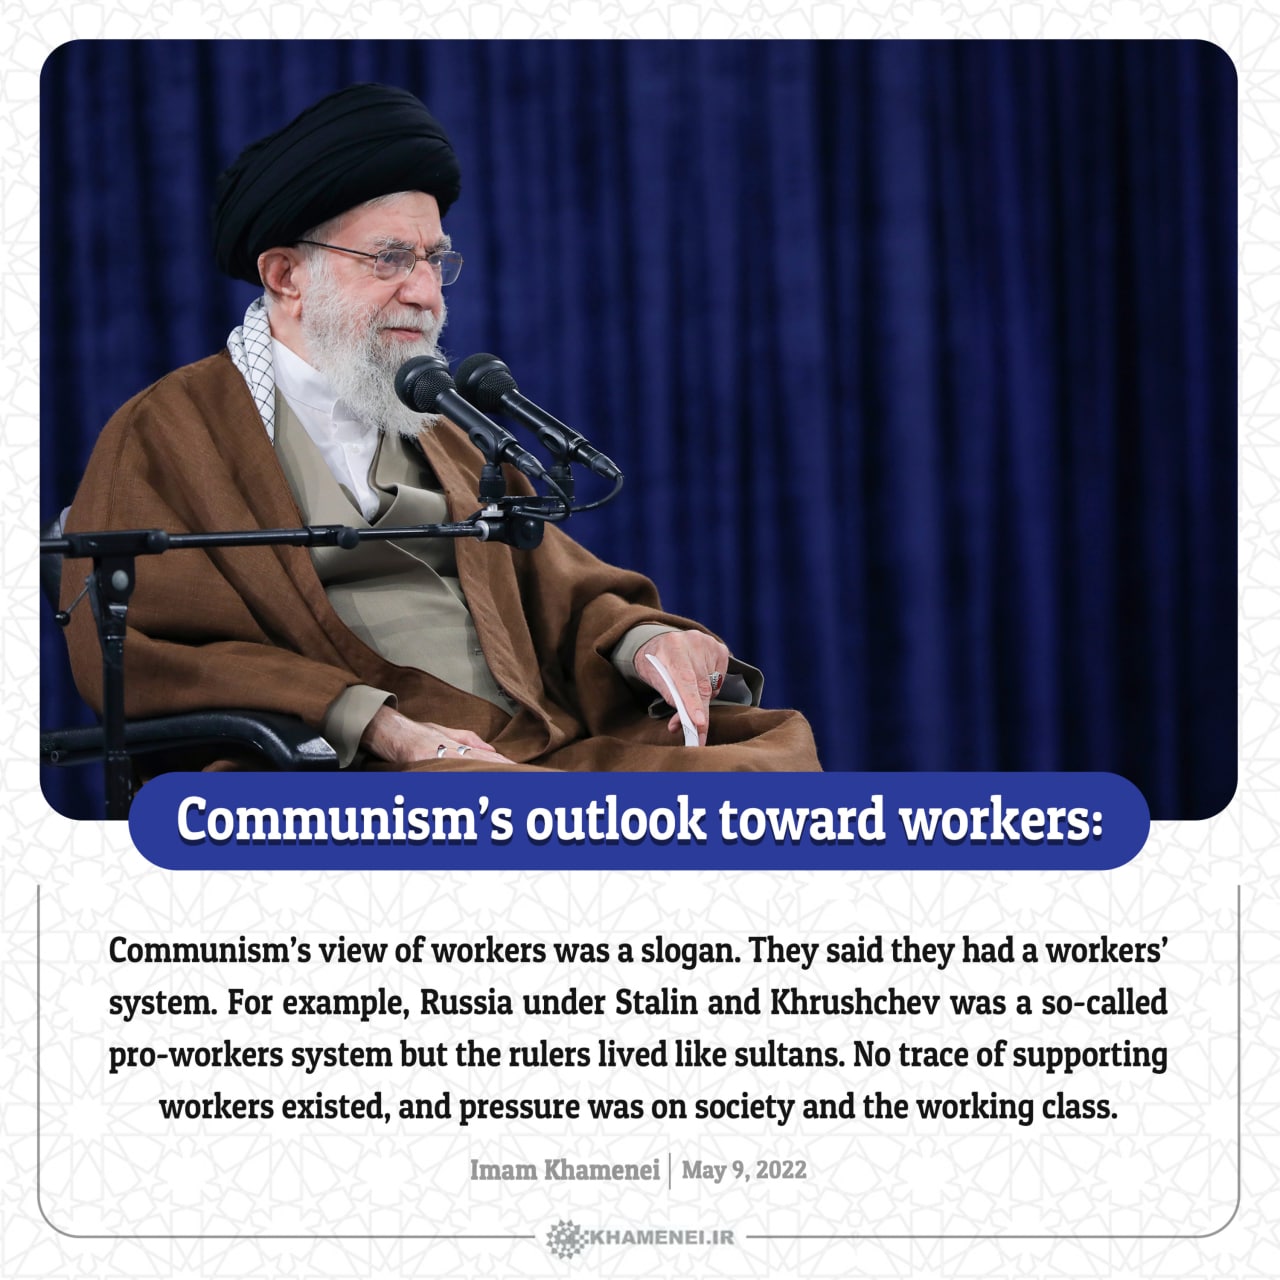 Communism’s outlook toward workers: